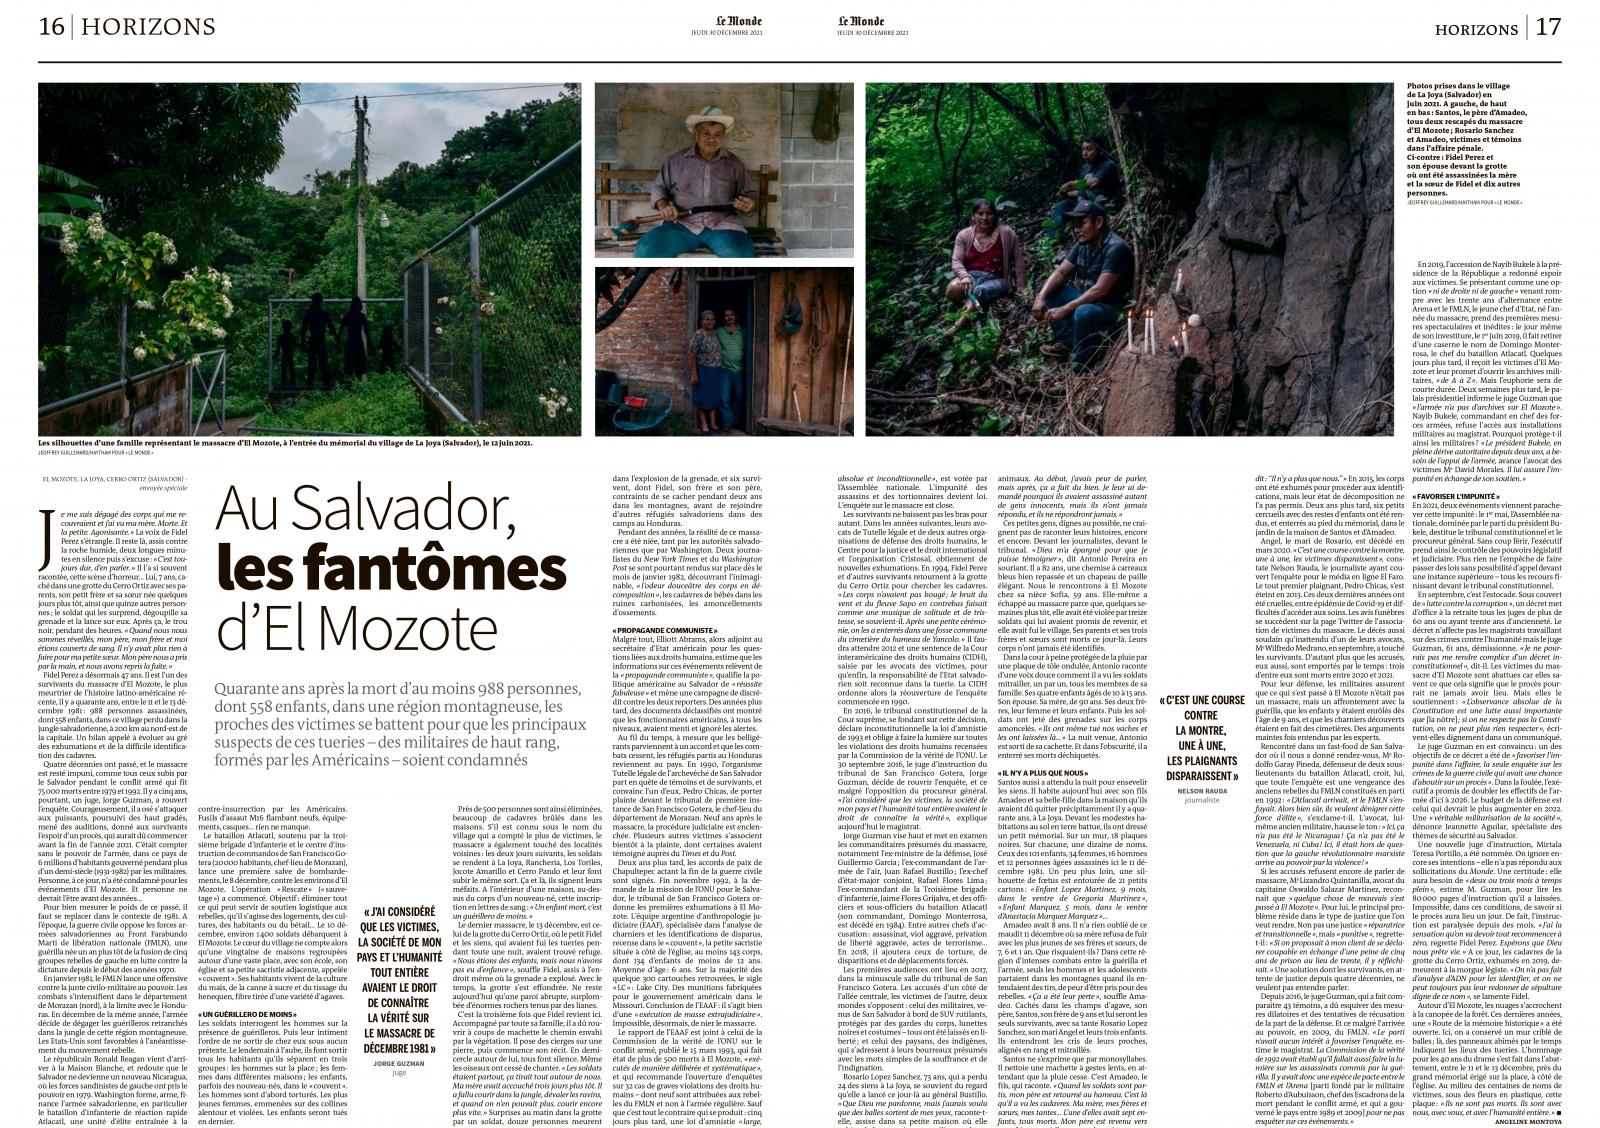 The El Mozote Massacre for Le Monde